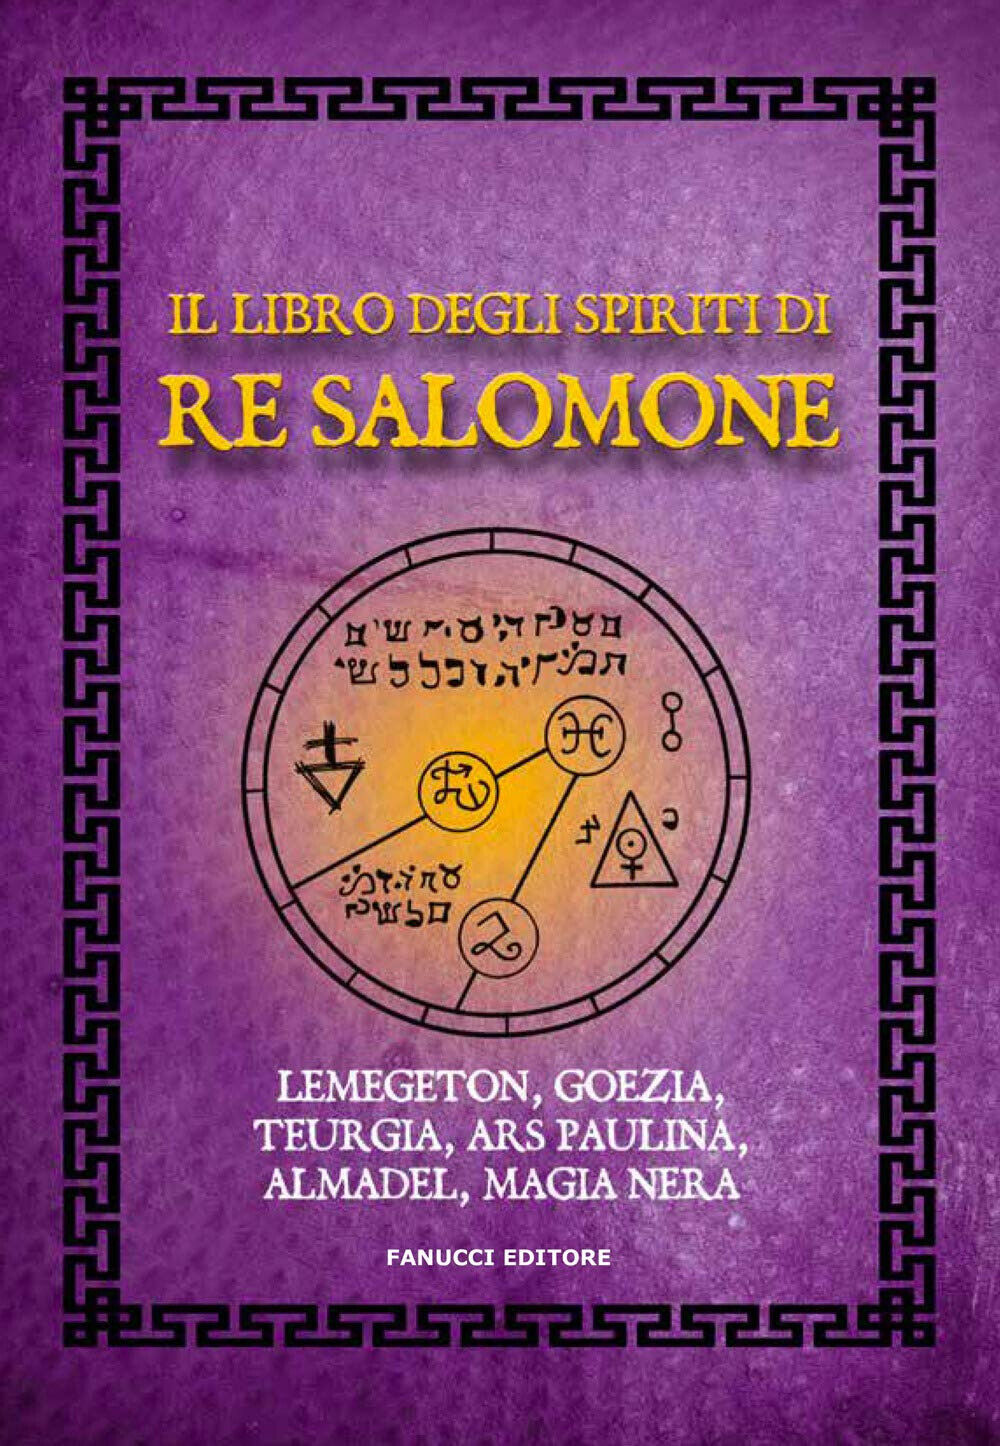 Il libro degli spiriti di re Salomone - AA.VV. - Fanucci, 2020 libro usato